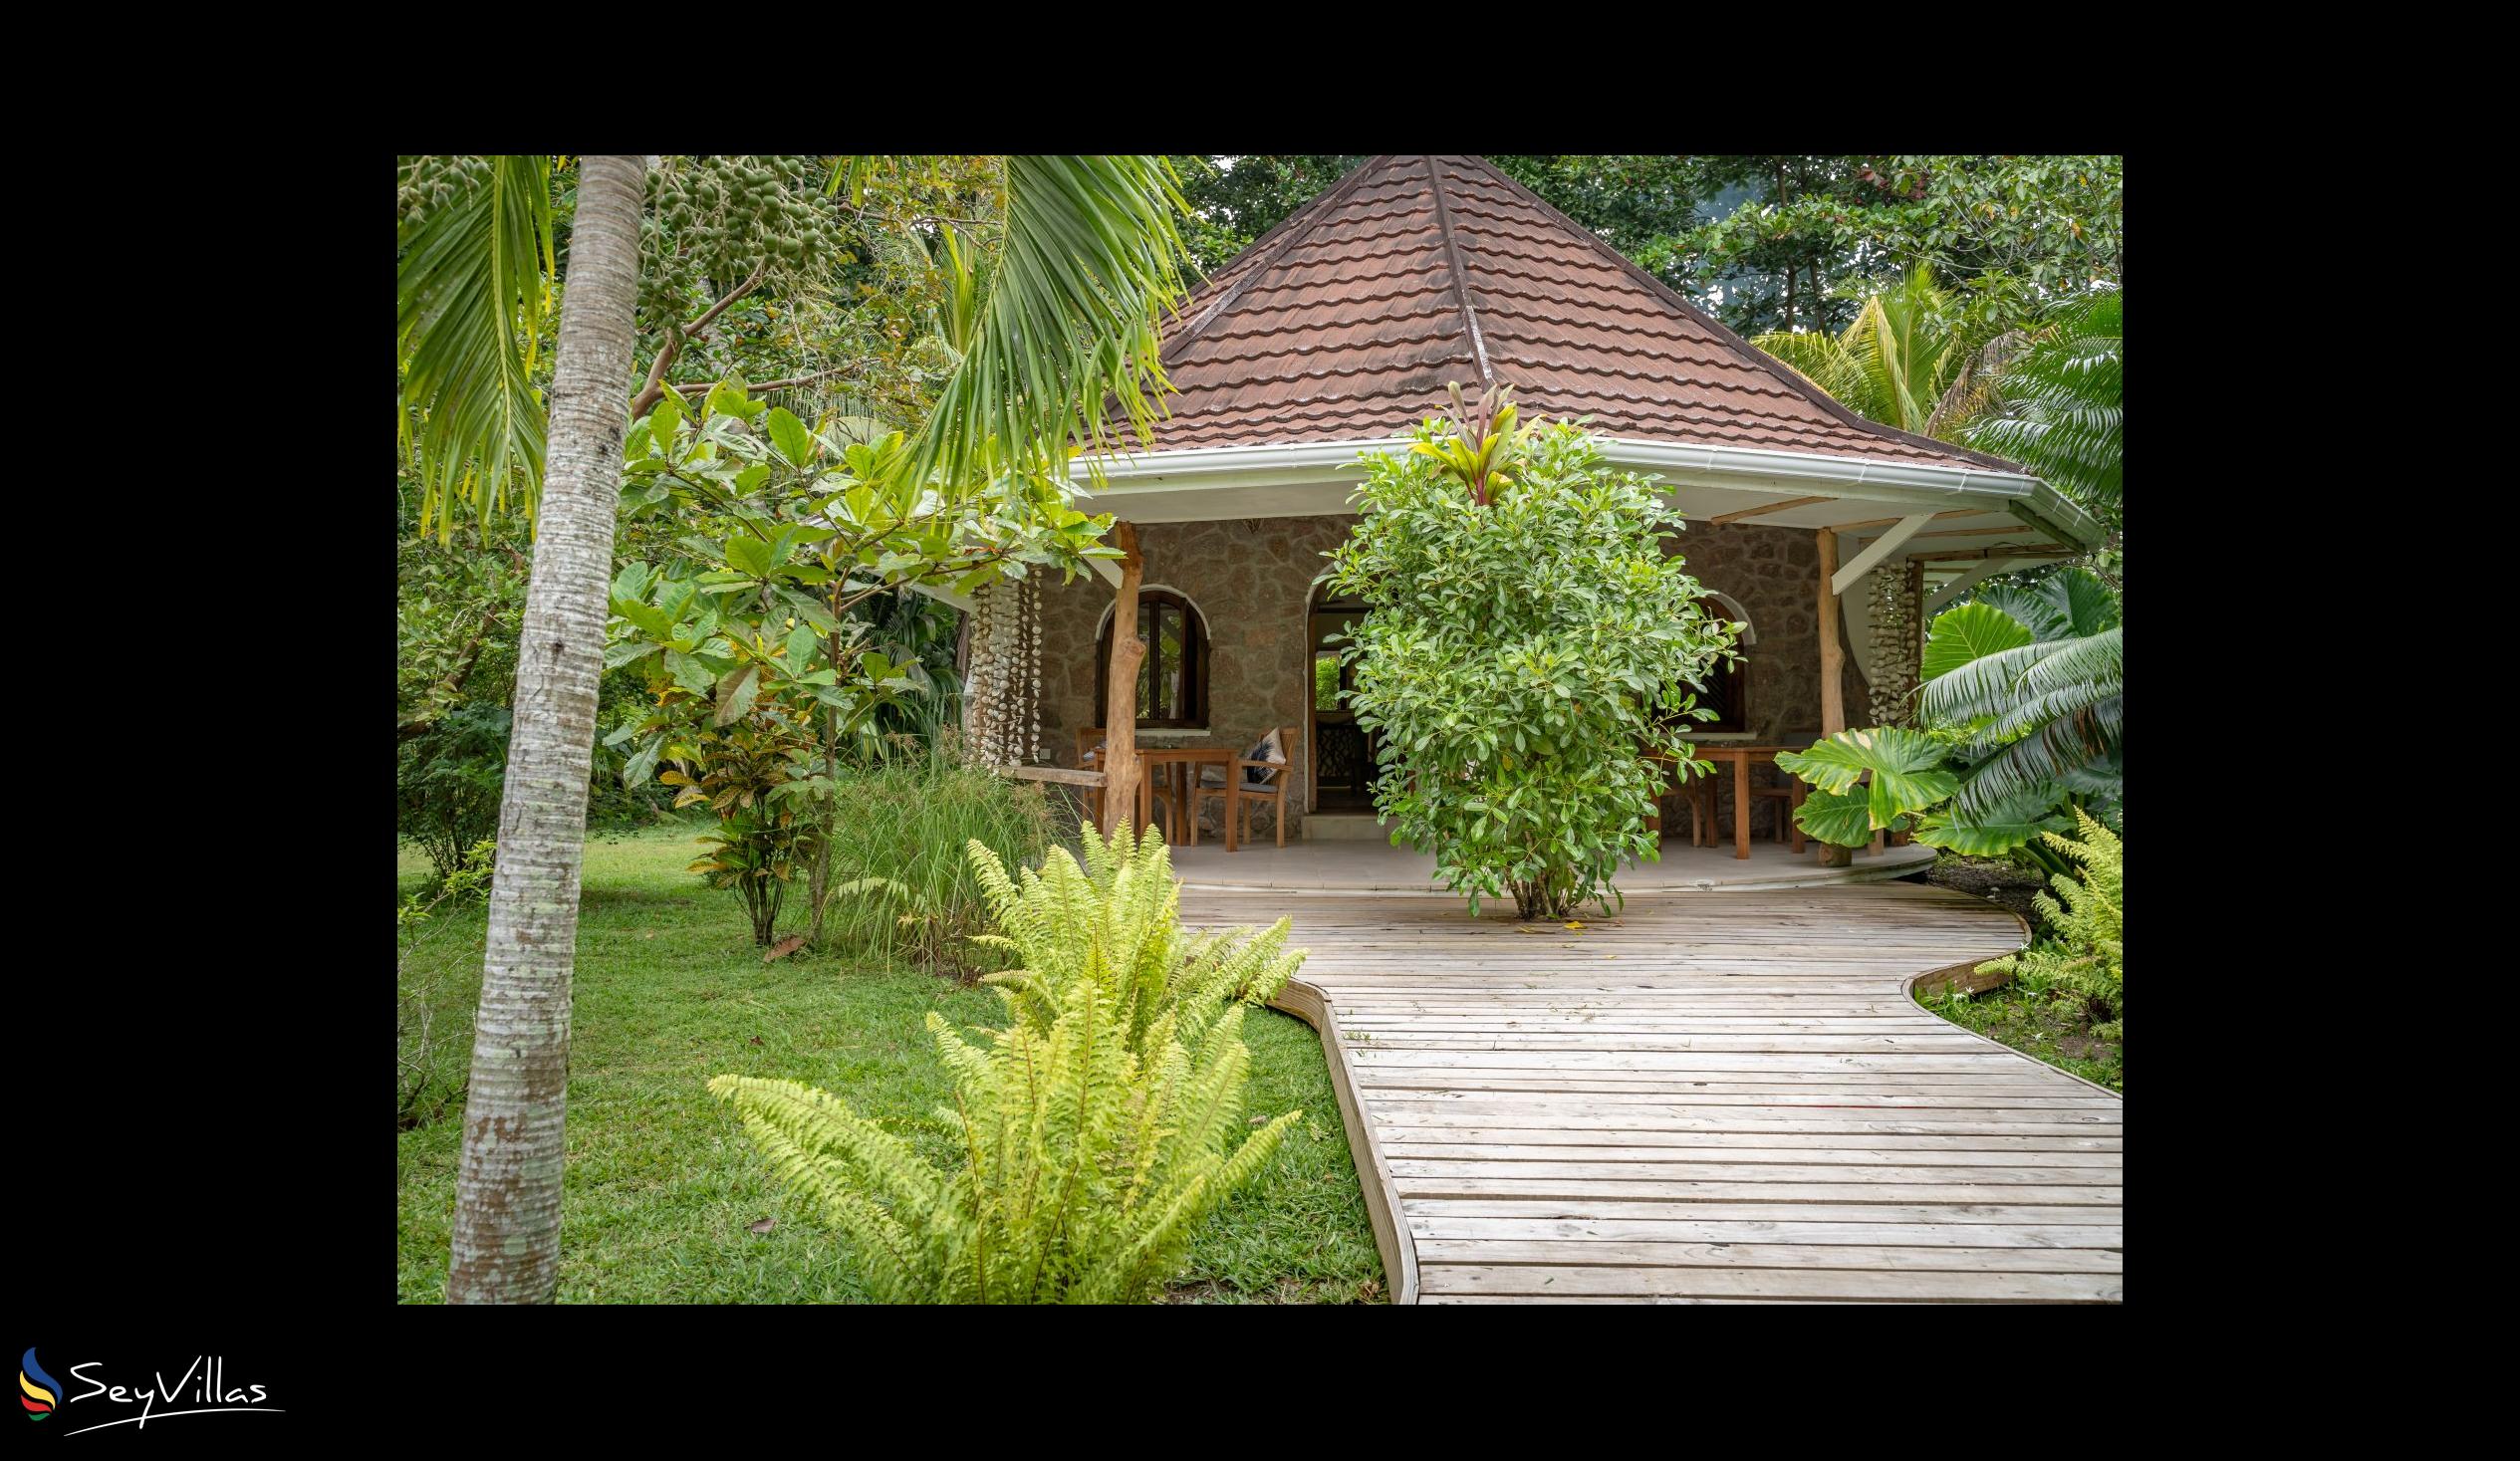 Photo 64: Bliss Hotel Praslin - Eden Garden - Charm Room - Praslin (Seychelles)